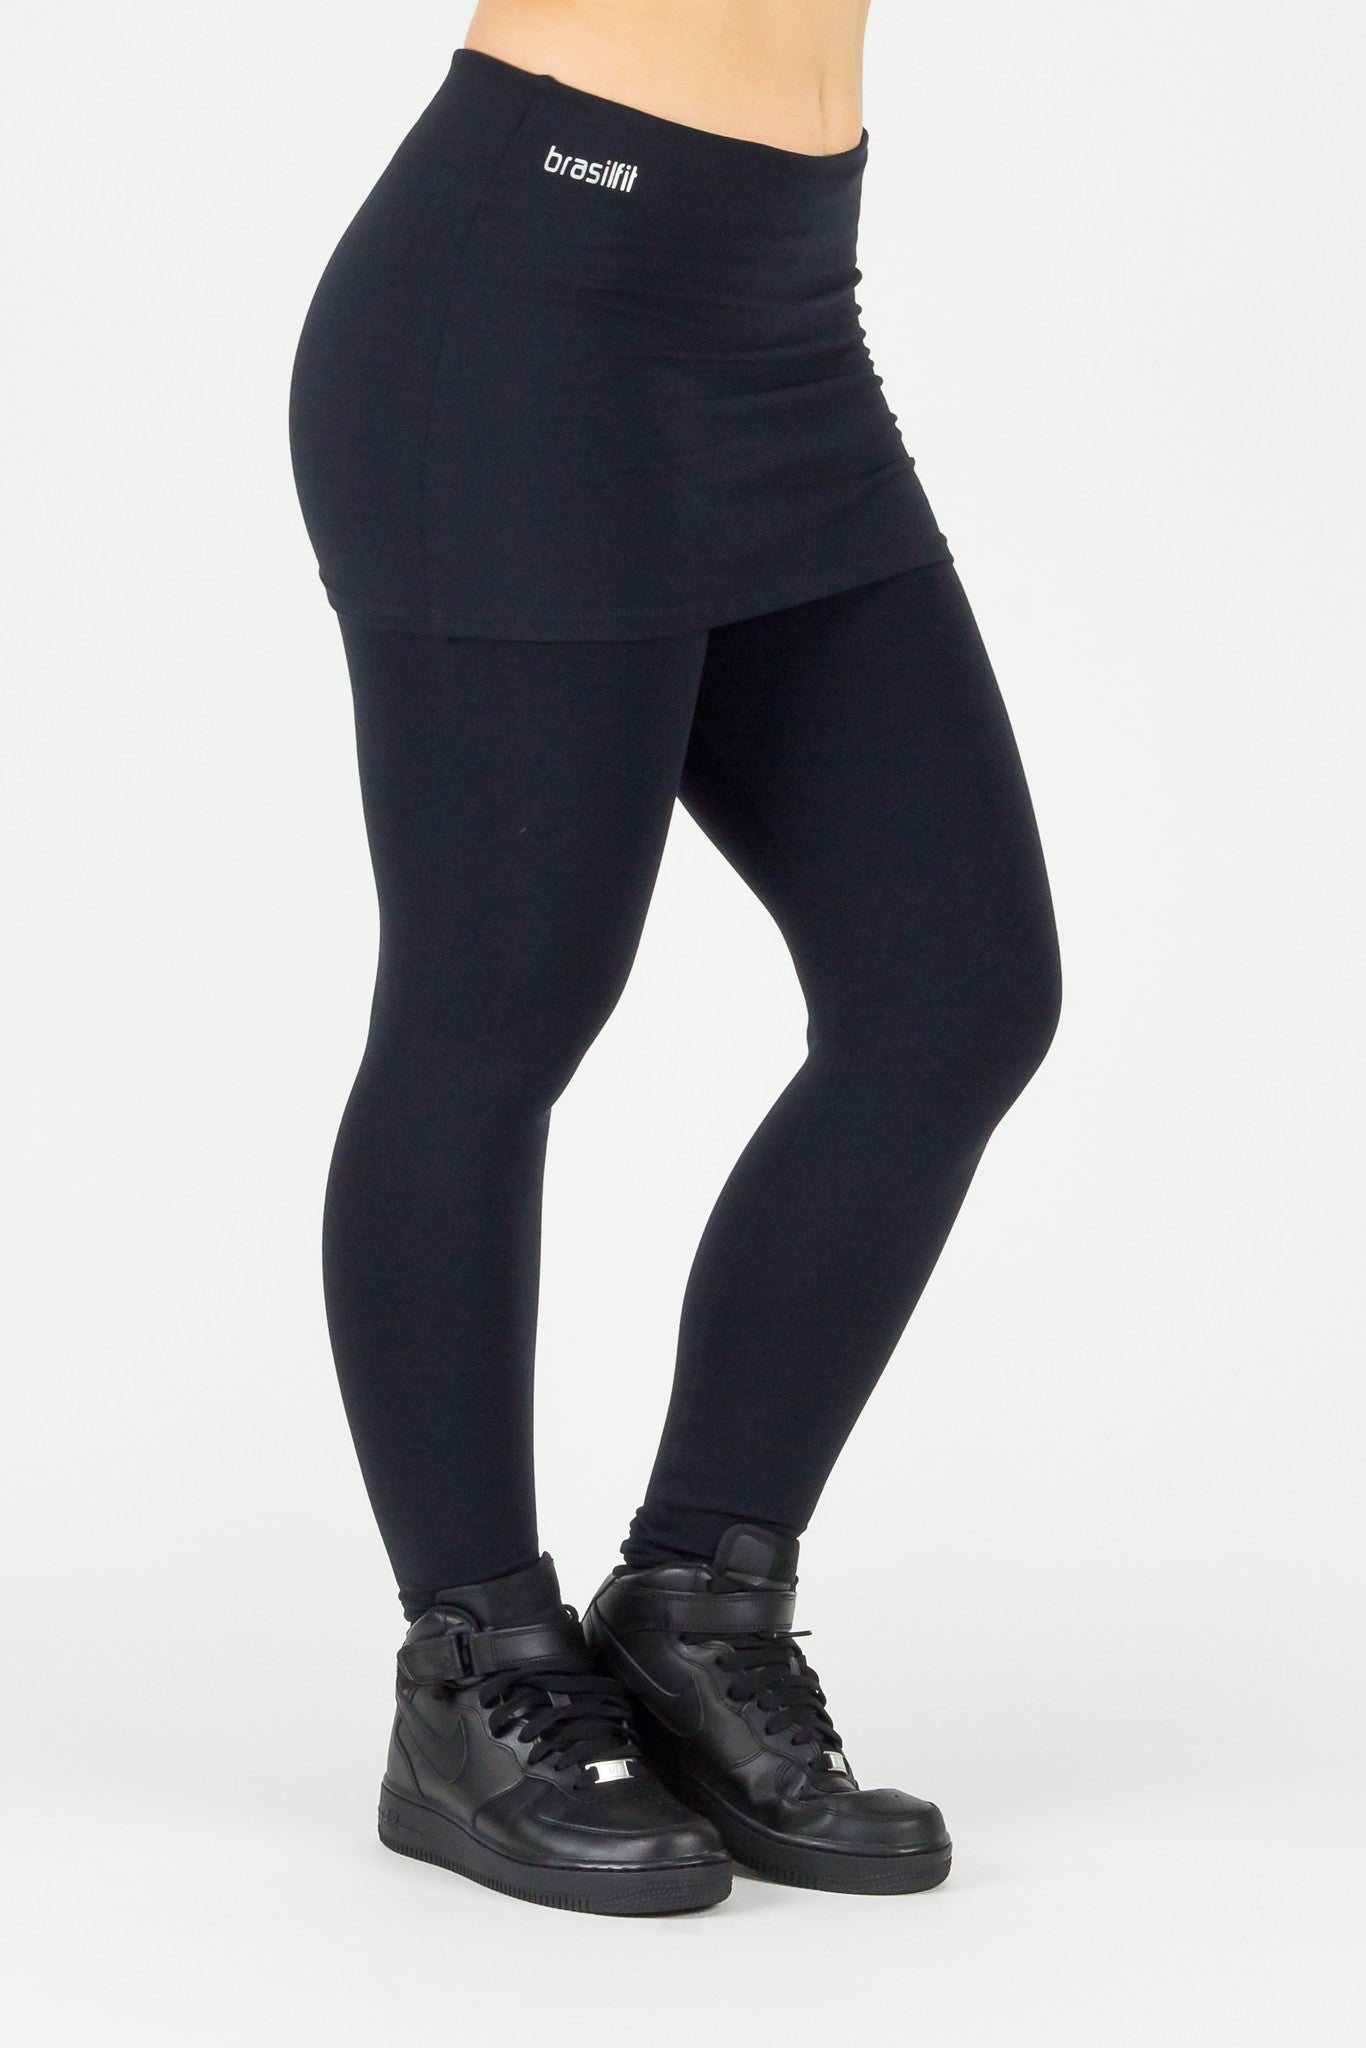 Legging Full Length Skirt - Supplex, Black